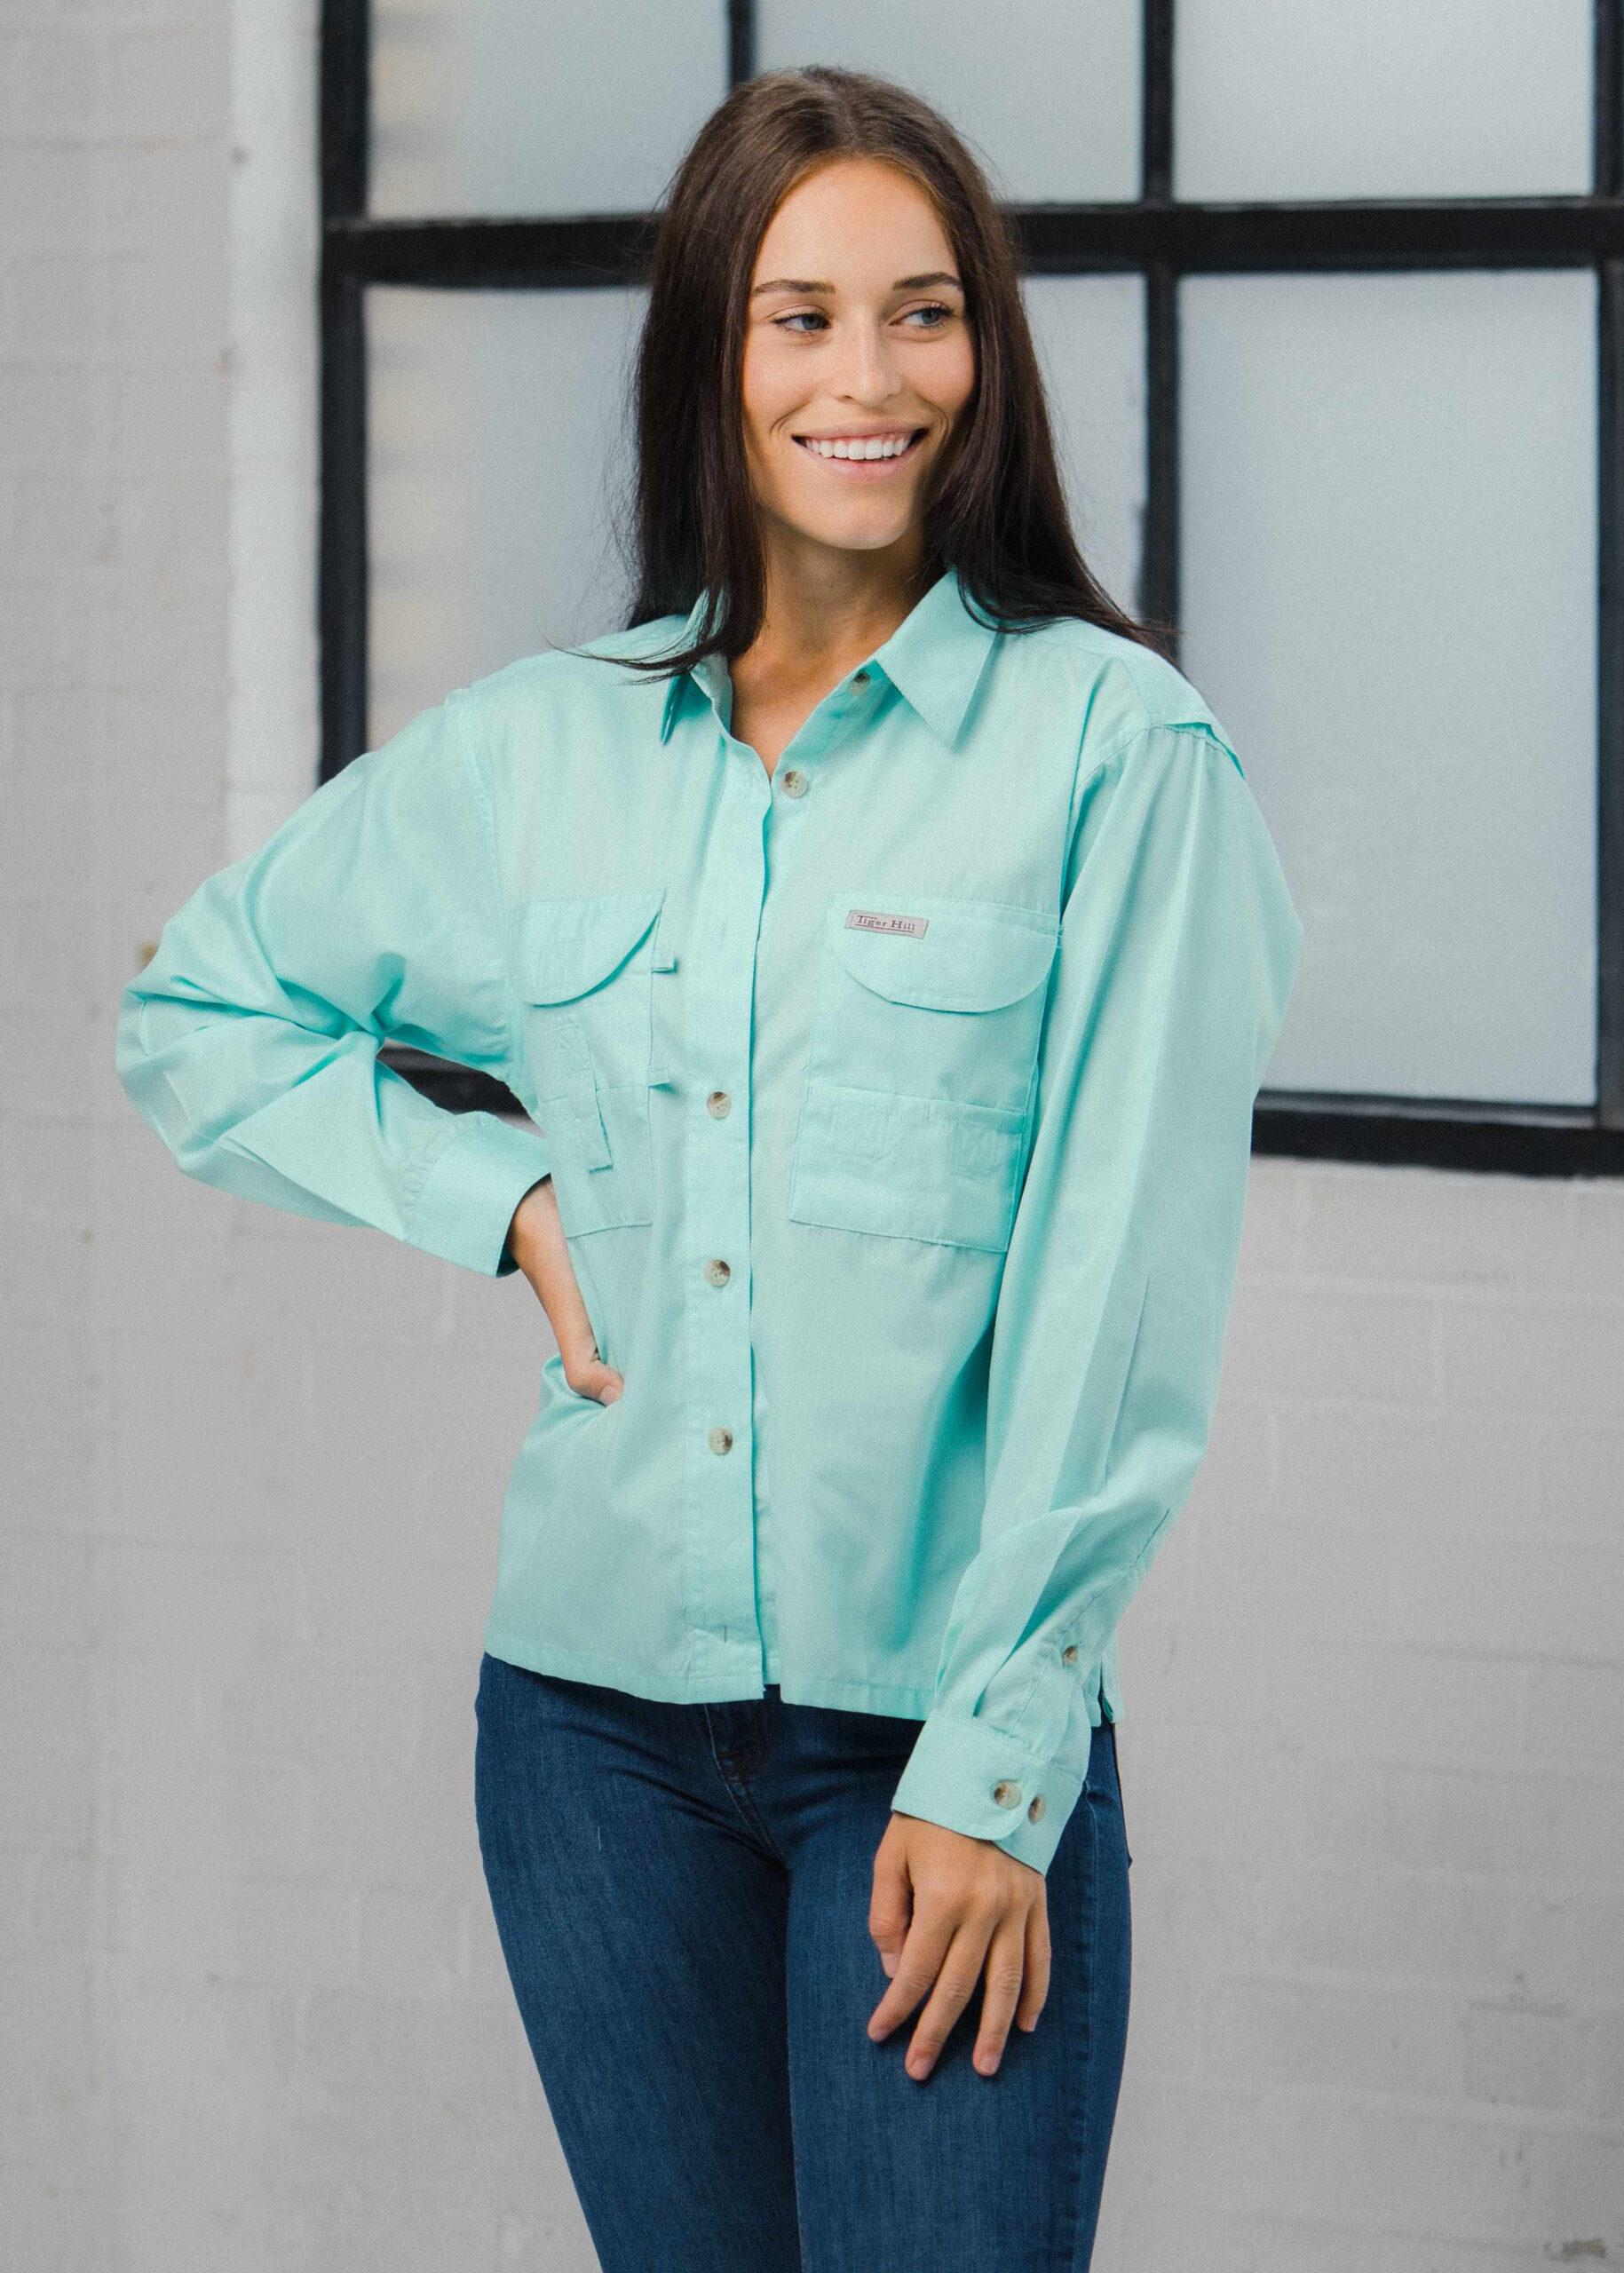 Fishing Shirts - Women's - Long Sleeve Fishing Shirt - FH Outfitters